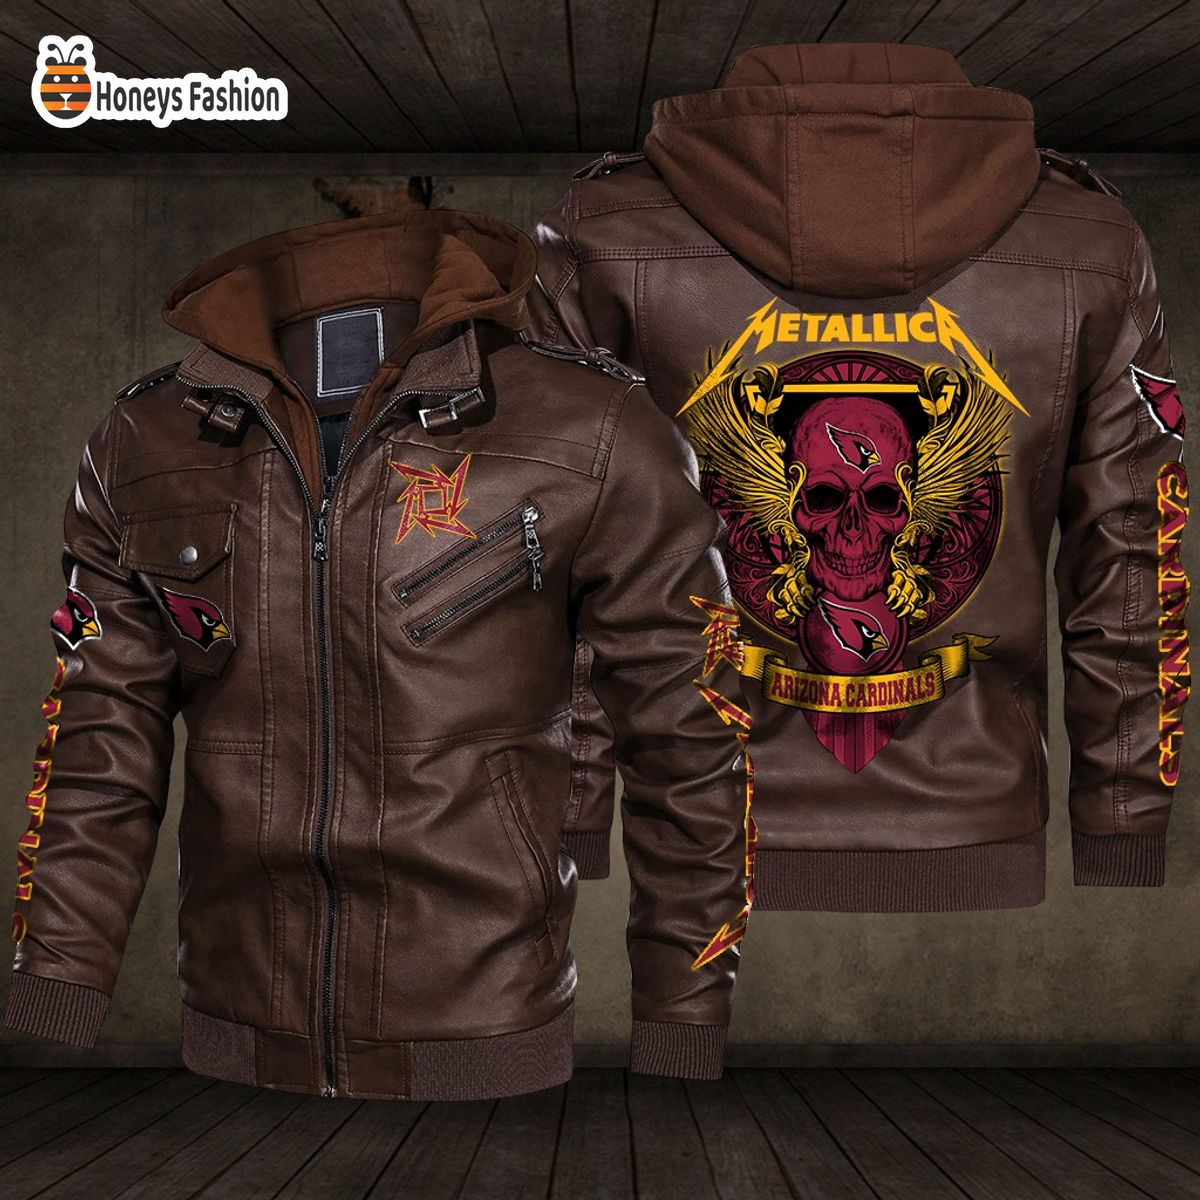 Arizona Cardinals NFL Metallica 2D PU Leather Jacket